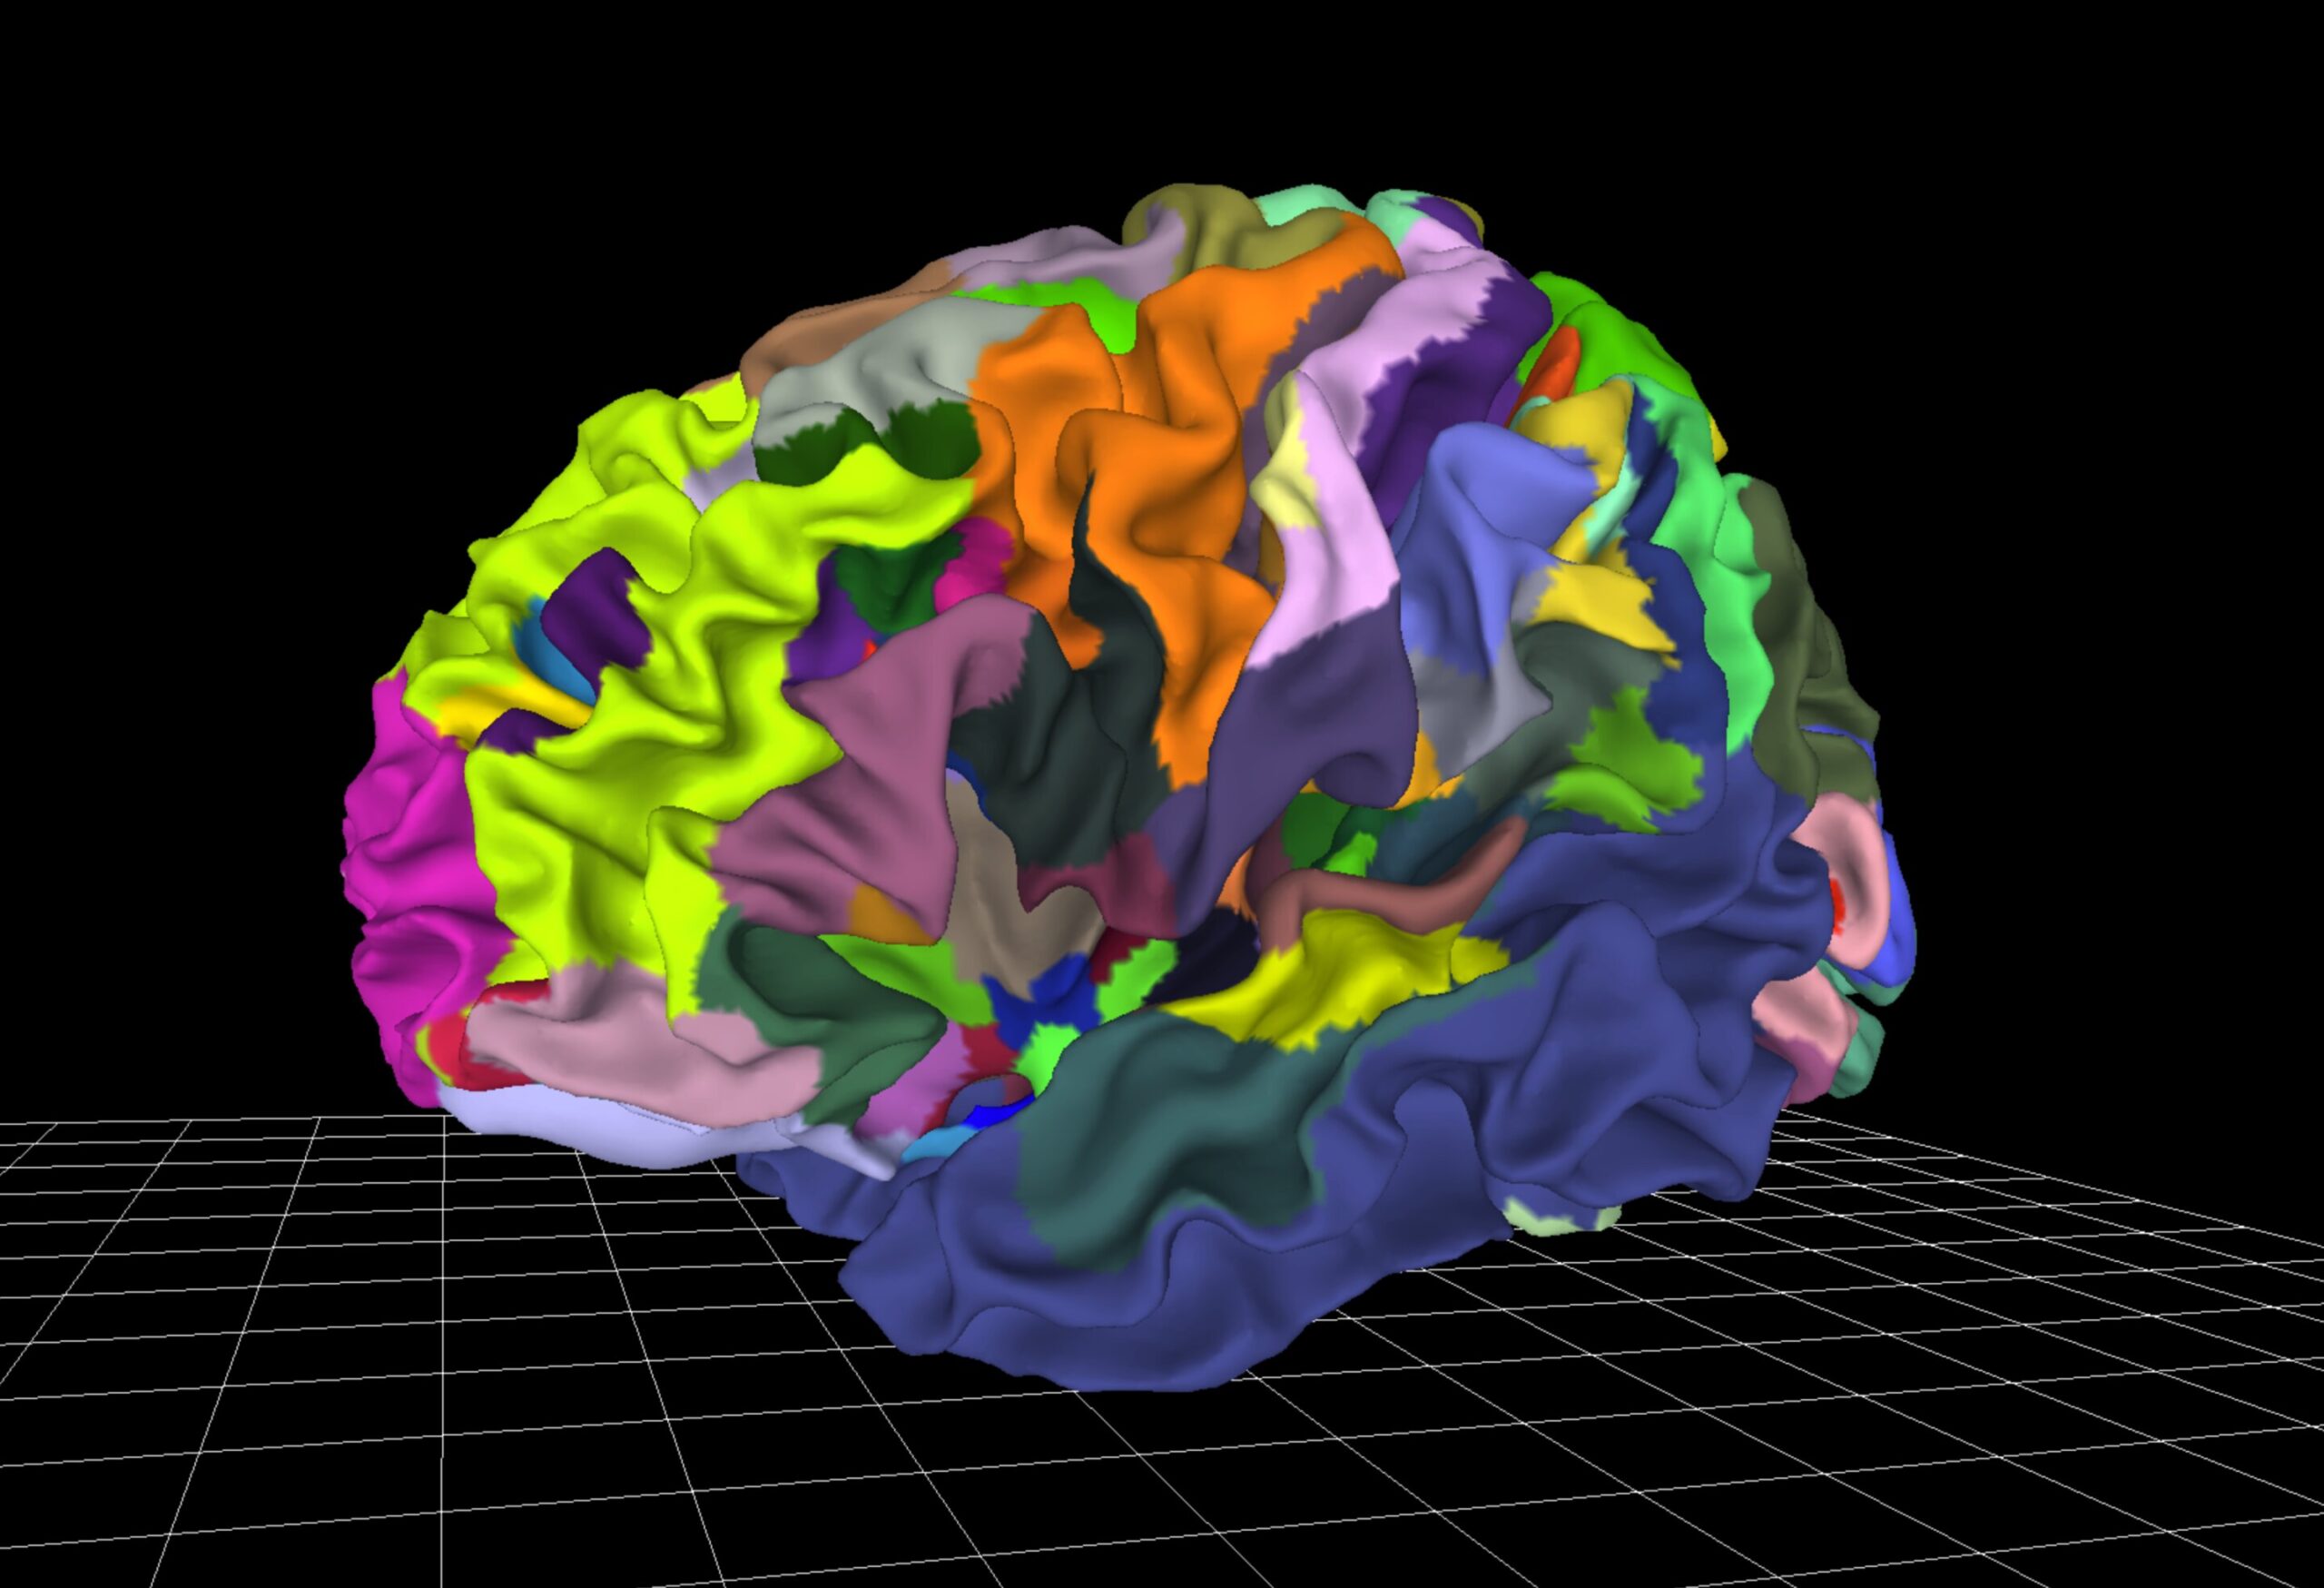 Atlas cerebral interactivo herramienta inexplorada en psiquiatría